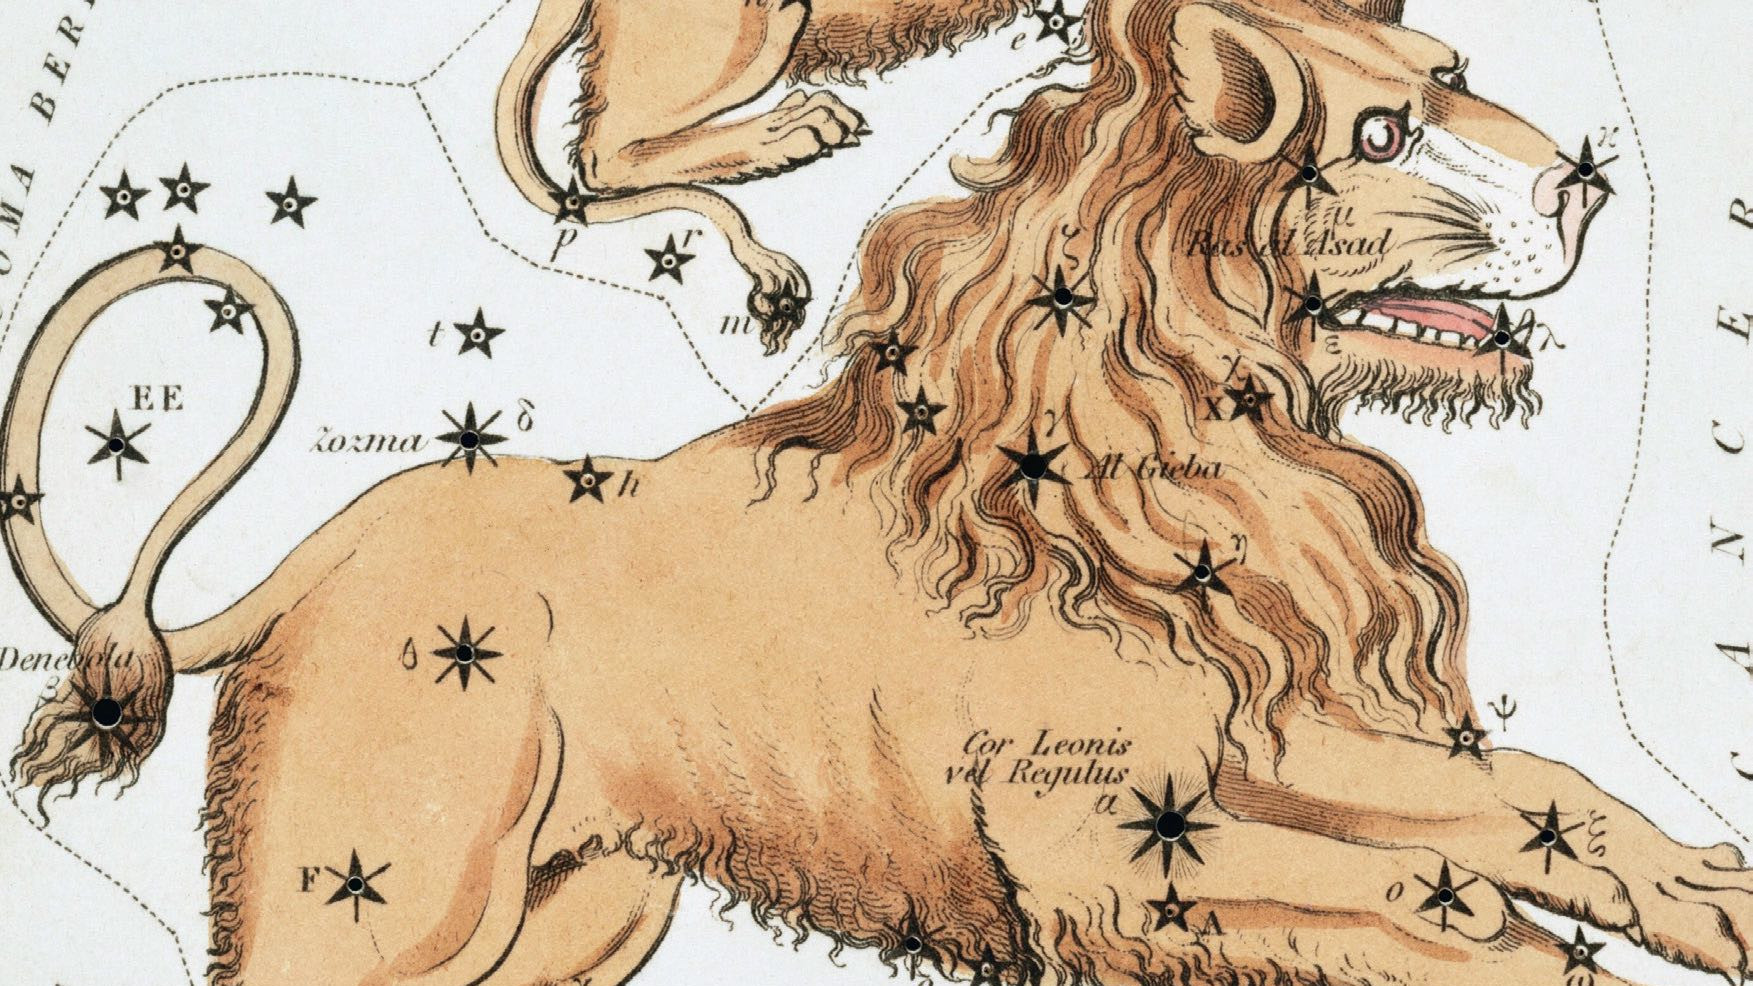 Medan vi idag i stjärnbilden ser en tydlig strykjärnsform, föreställde sig himmelsobservatörerna för tusentals år sedan ett hukande lejon, vars hjärta markeras av den ljusa stjärnan Regulus.